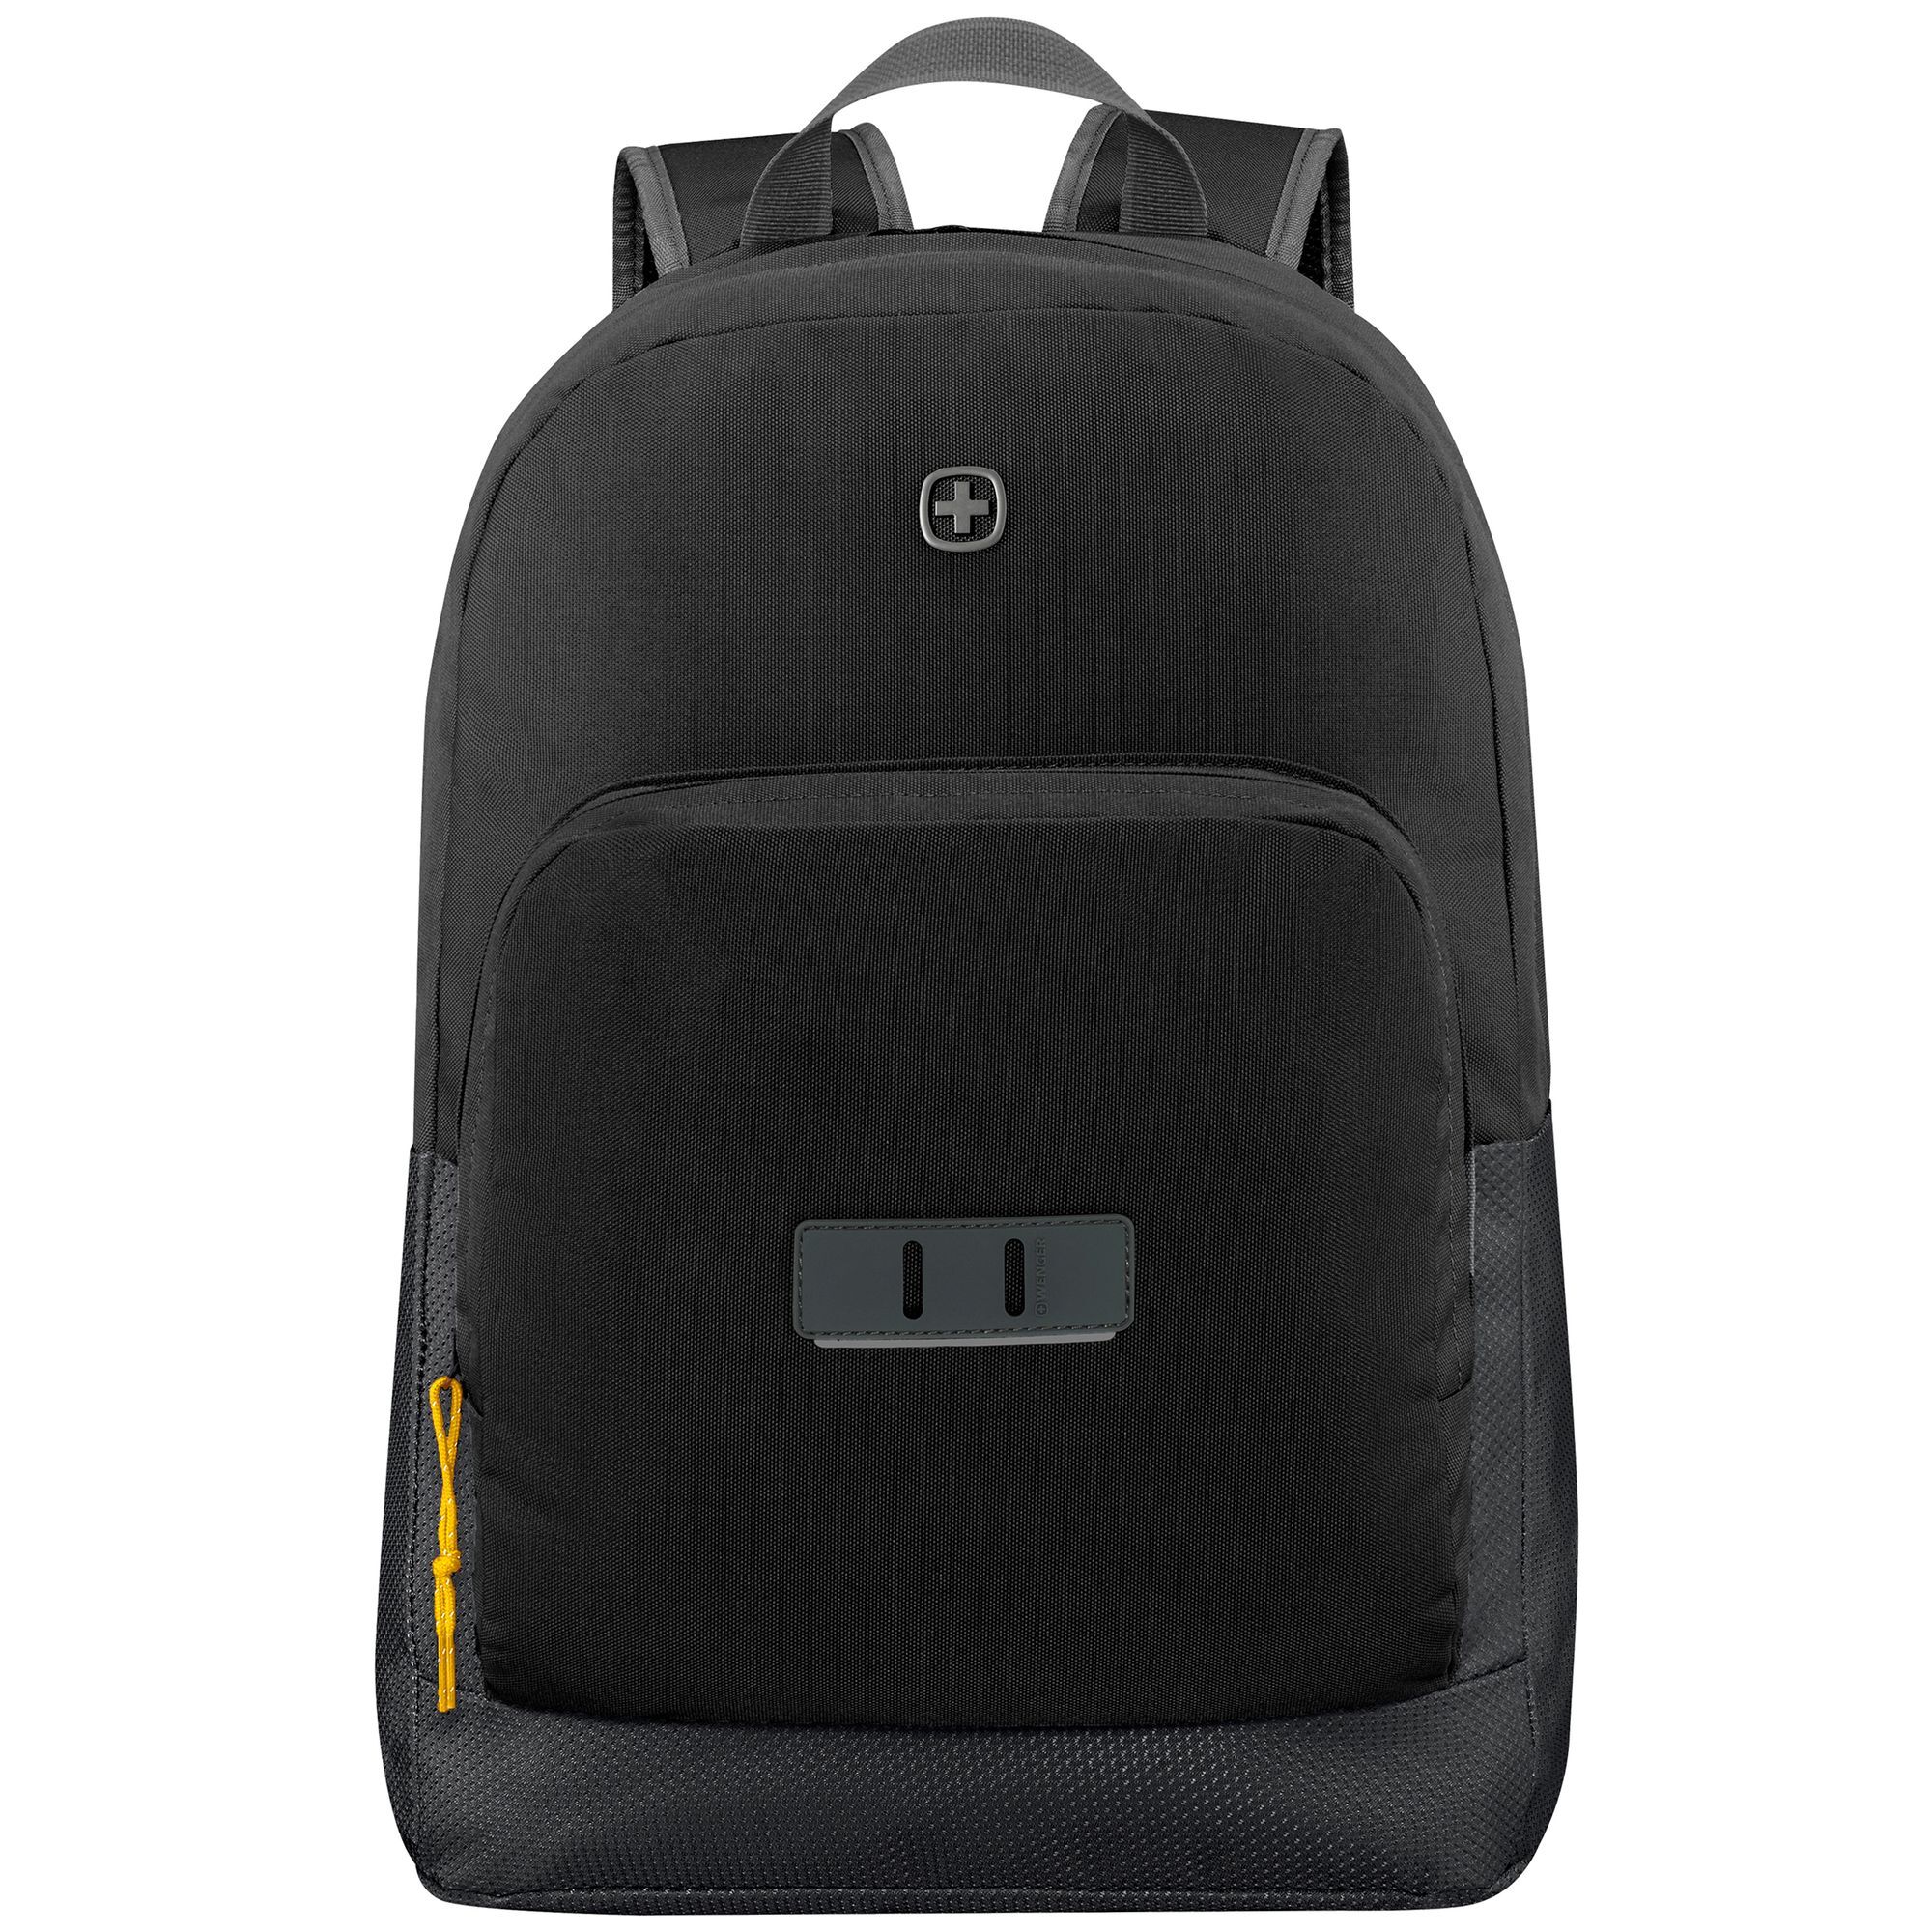 Рюкзак Wenger Crango 46 cm Laptopfach, цвет gravity black рюкзак wenger crango 46 cm laptopfach цвет gravity black